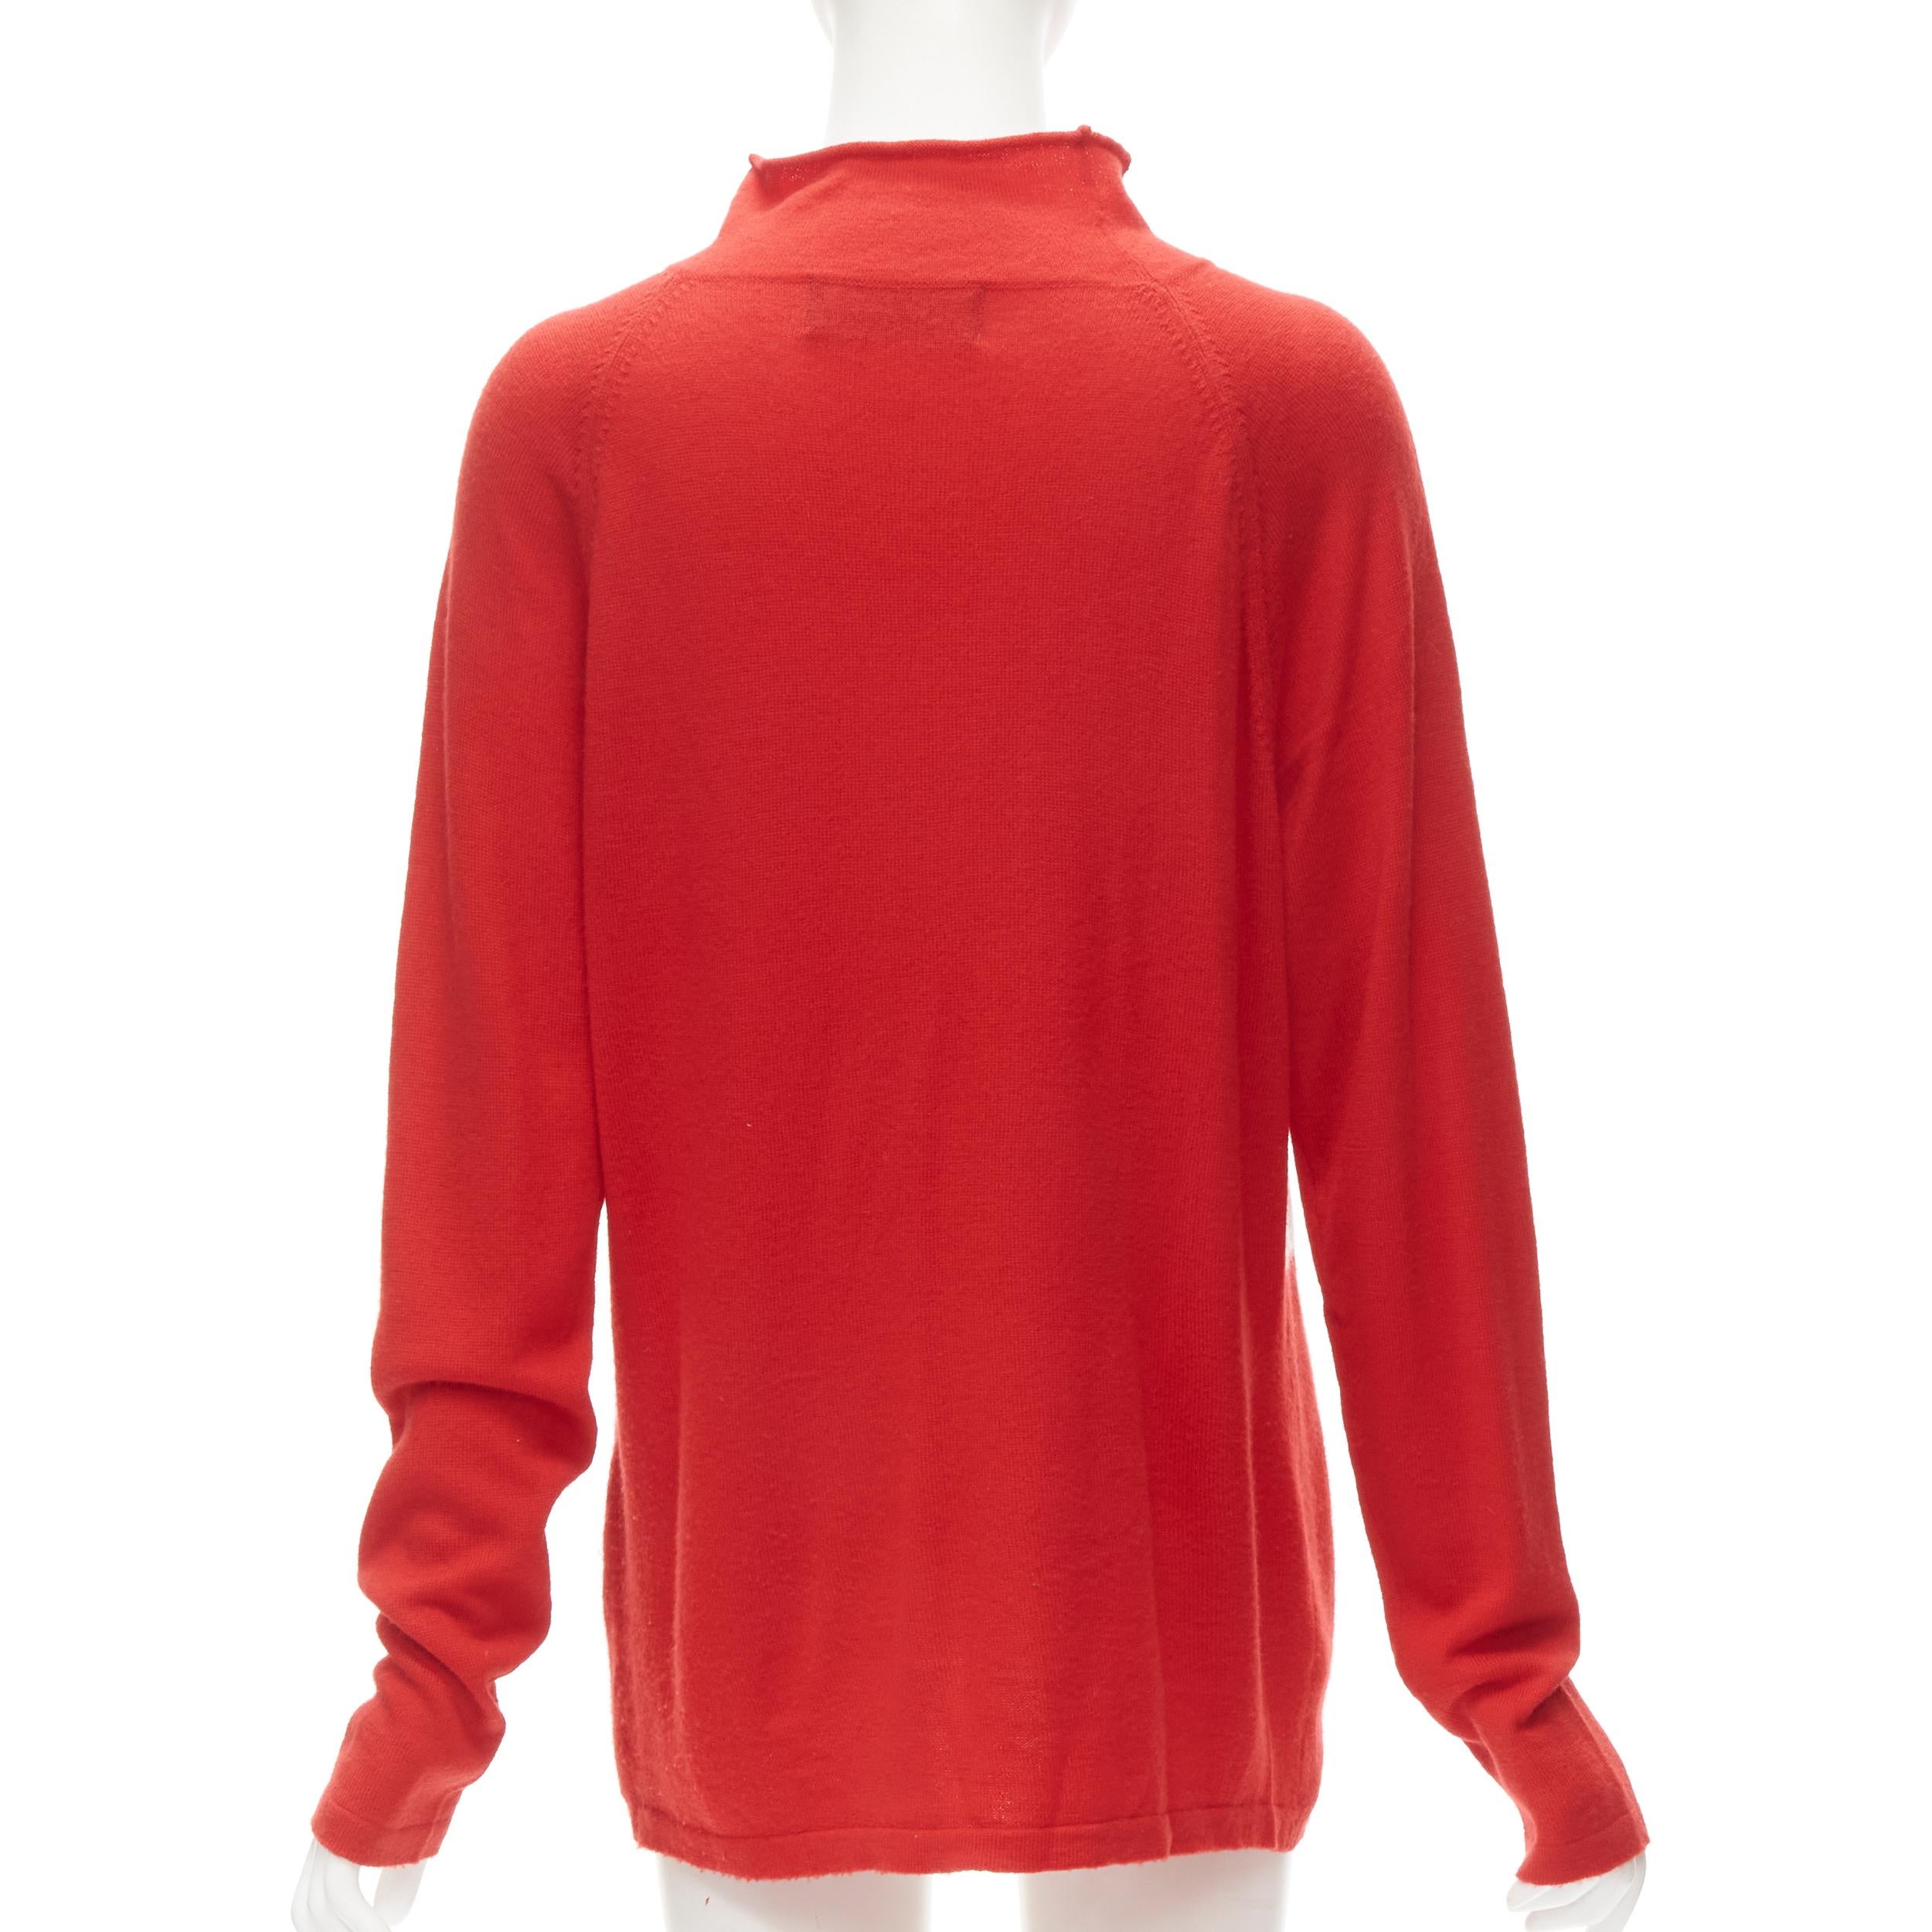 JEREMY SCOTT 2011 Vintage Enjoy God red roll neck oversized sweater M 1